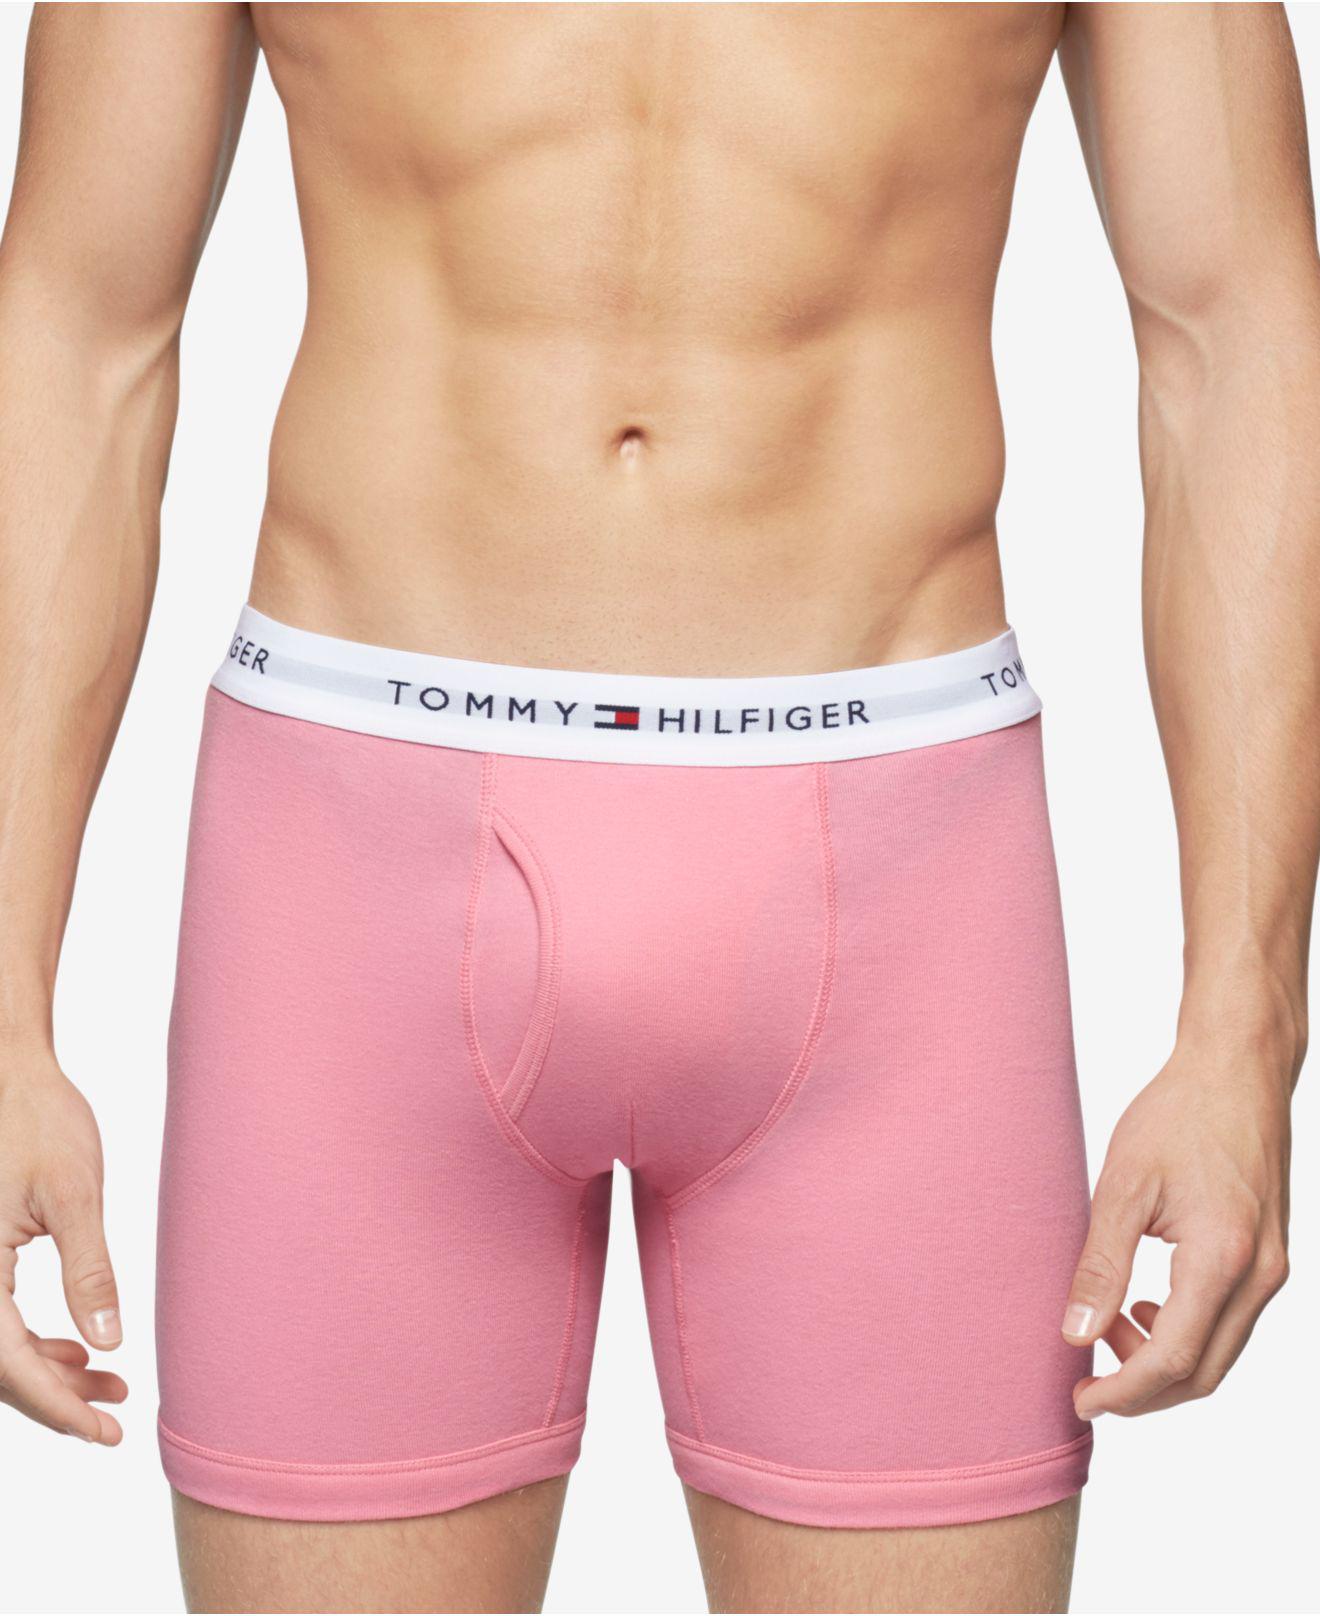 Tommy Hilfiger Cotton Underwear Boxer Briefs in Pink for Men - Lyst